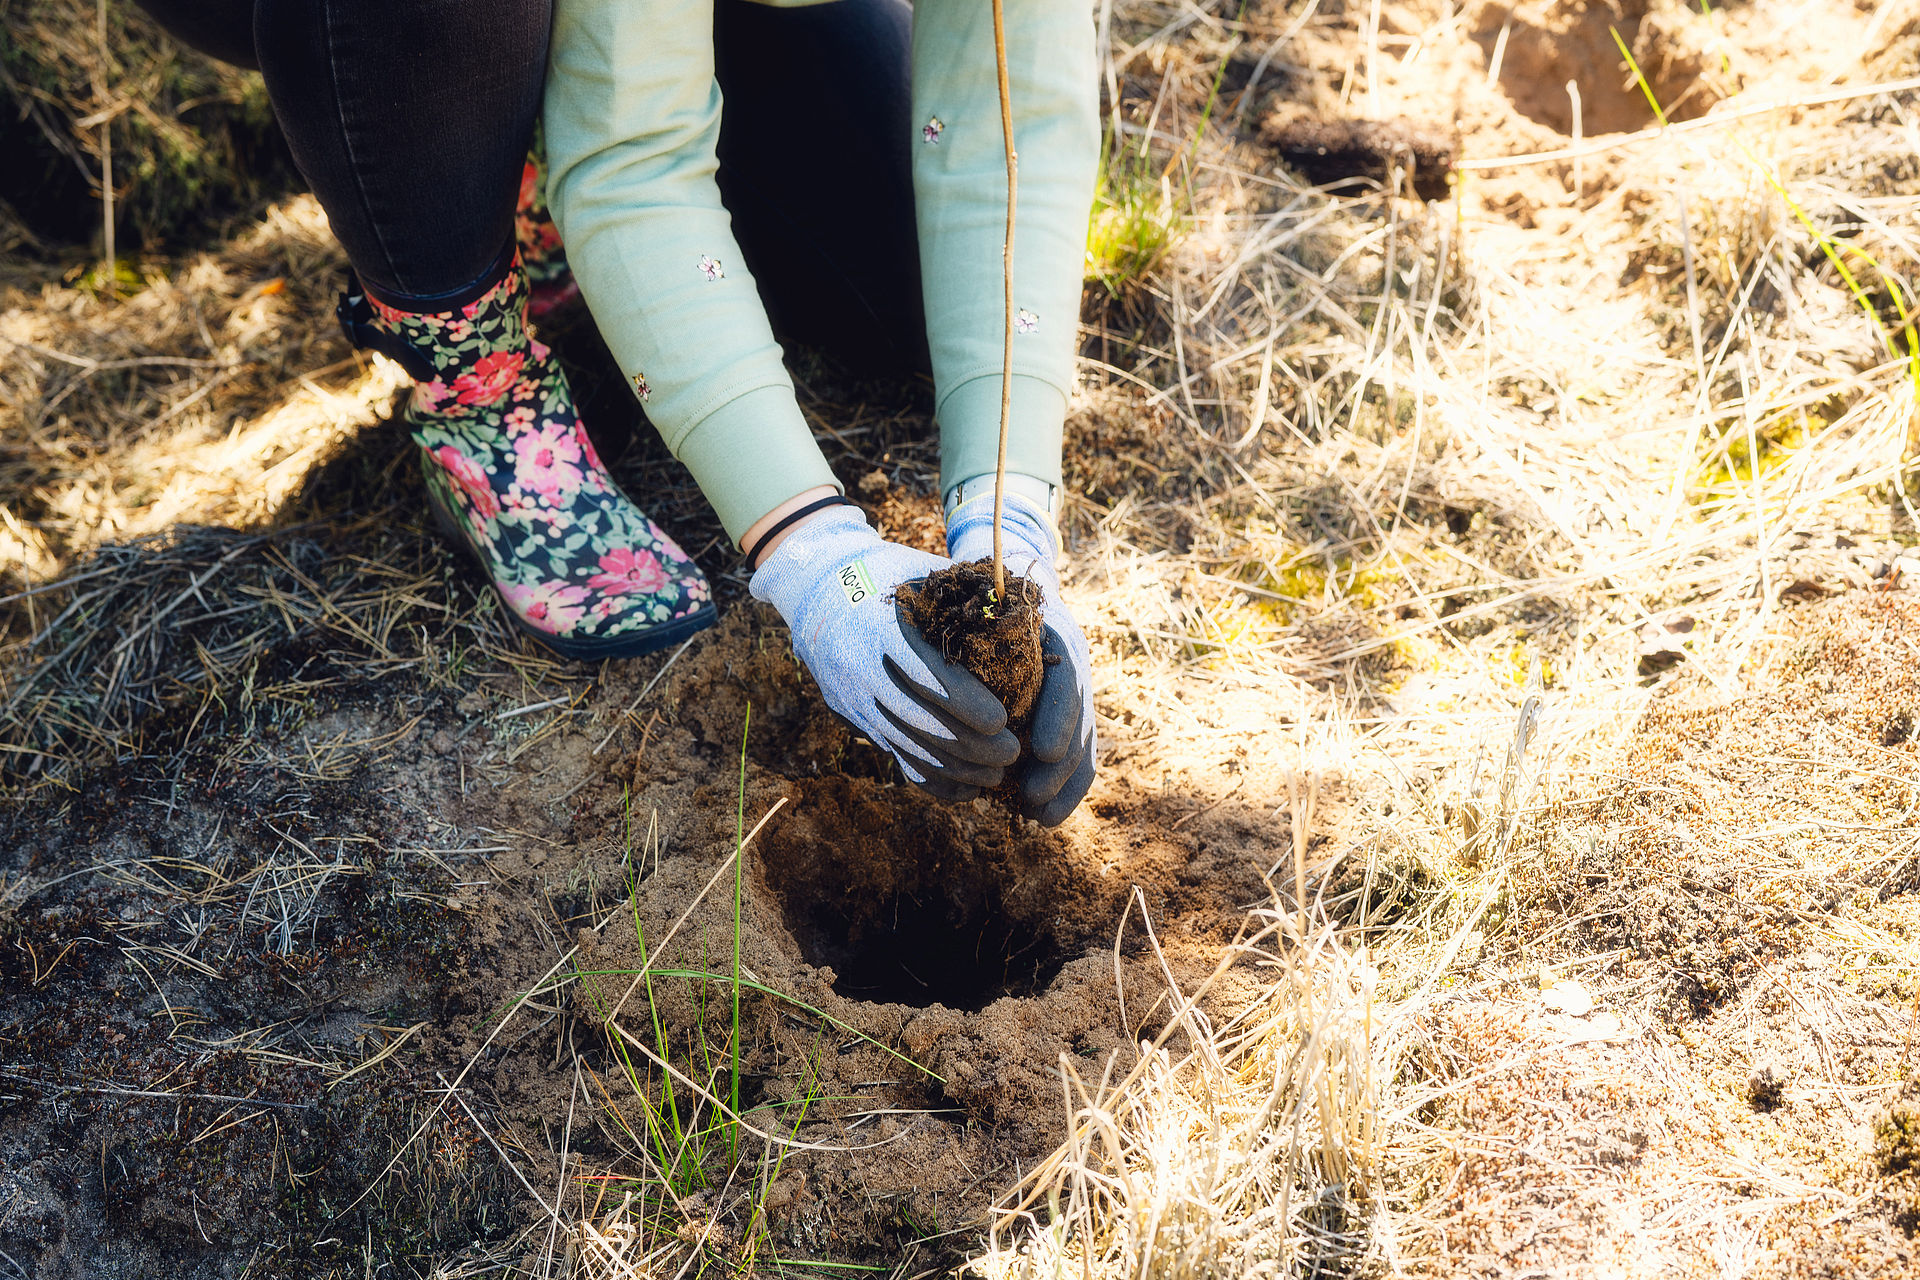 Baum-Setzling wird von einer Frau mit Handschuhen in den Boden gepflanzt